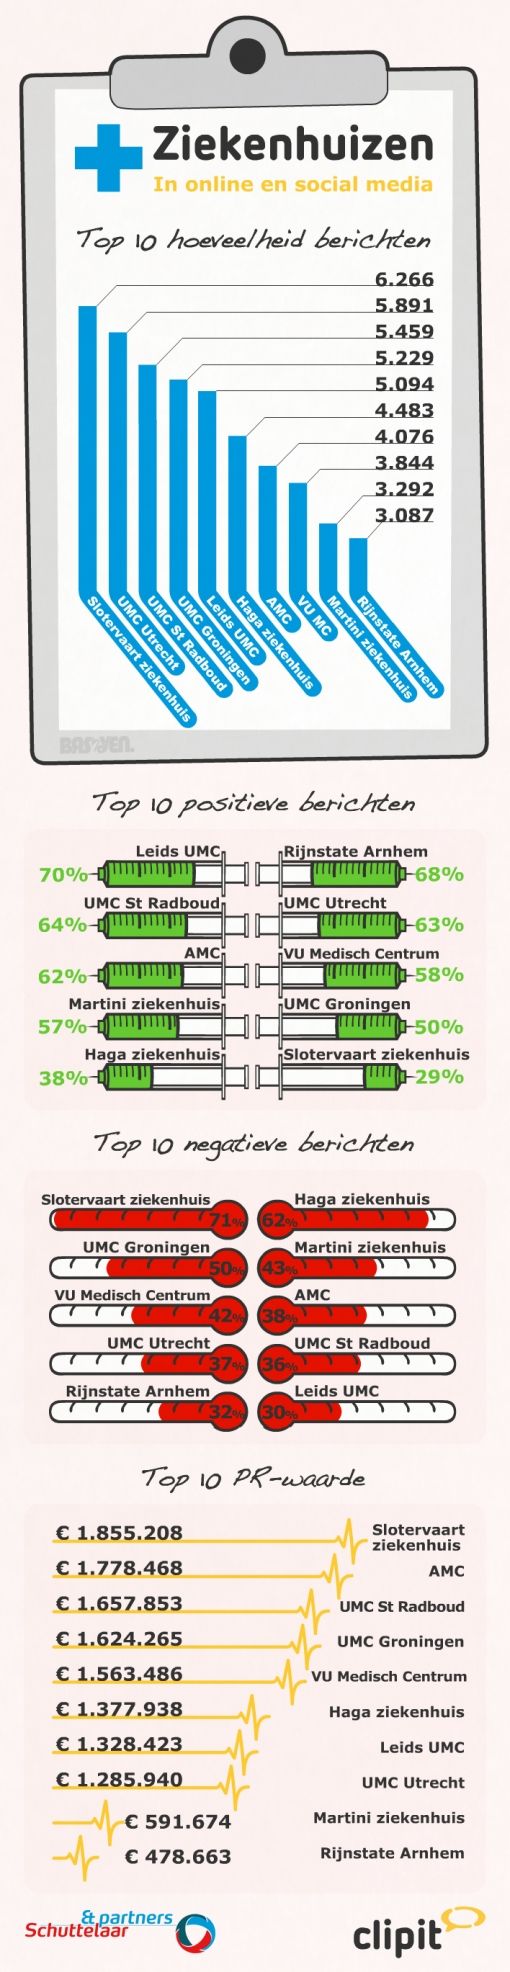 infographic-ziekenhuizen-2013.jpg